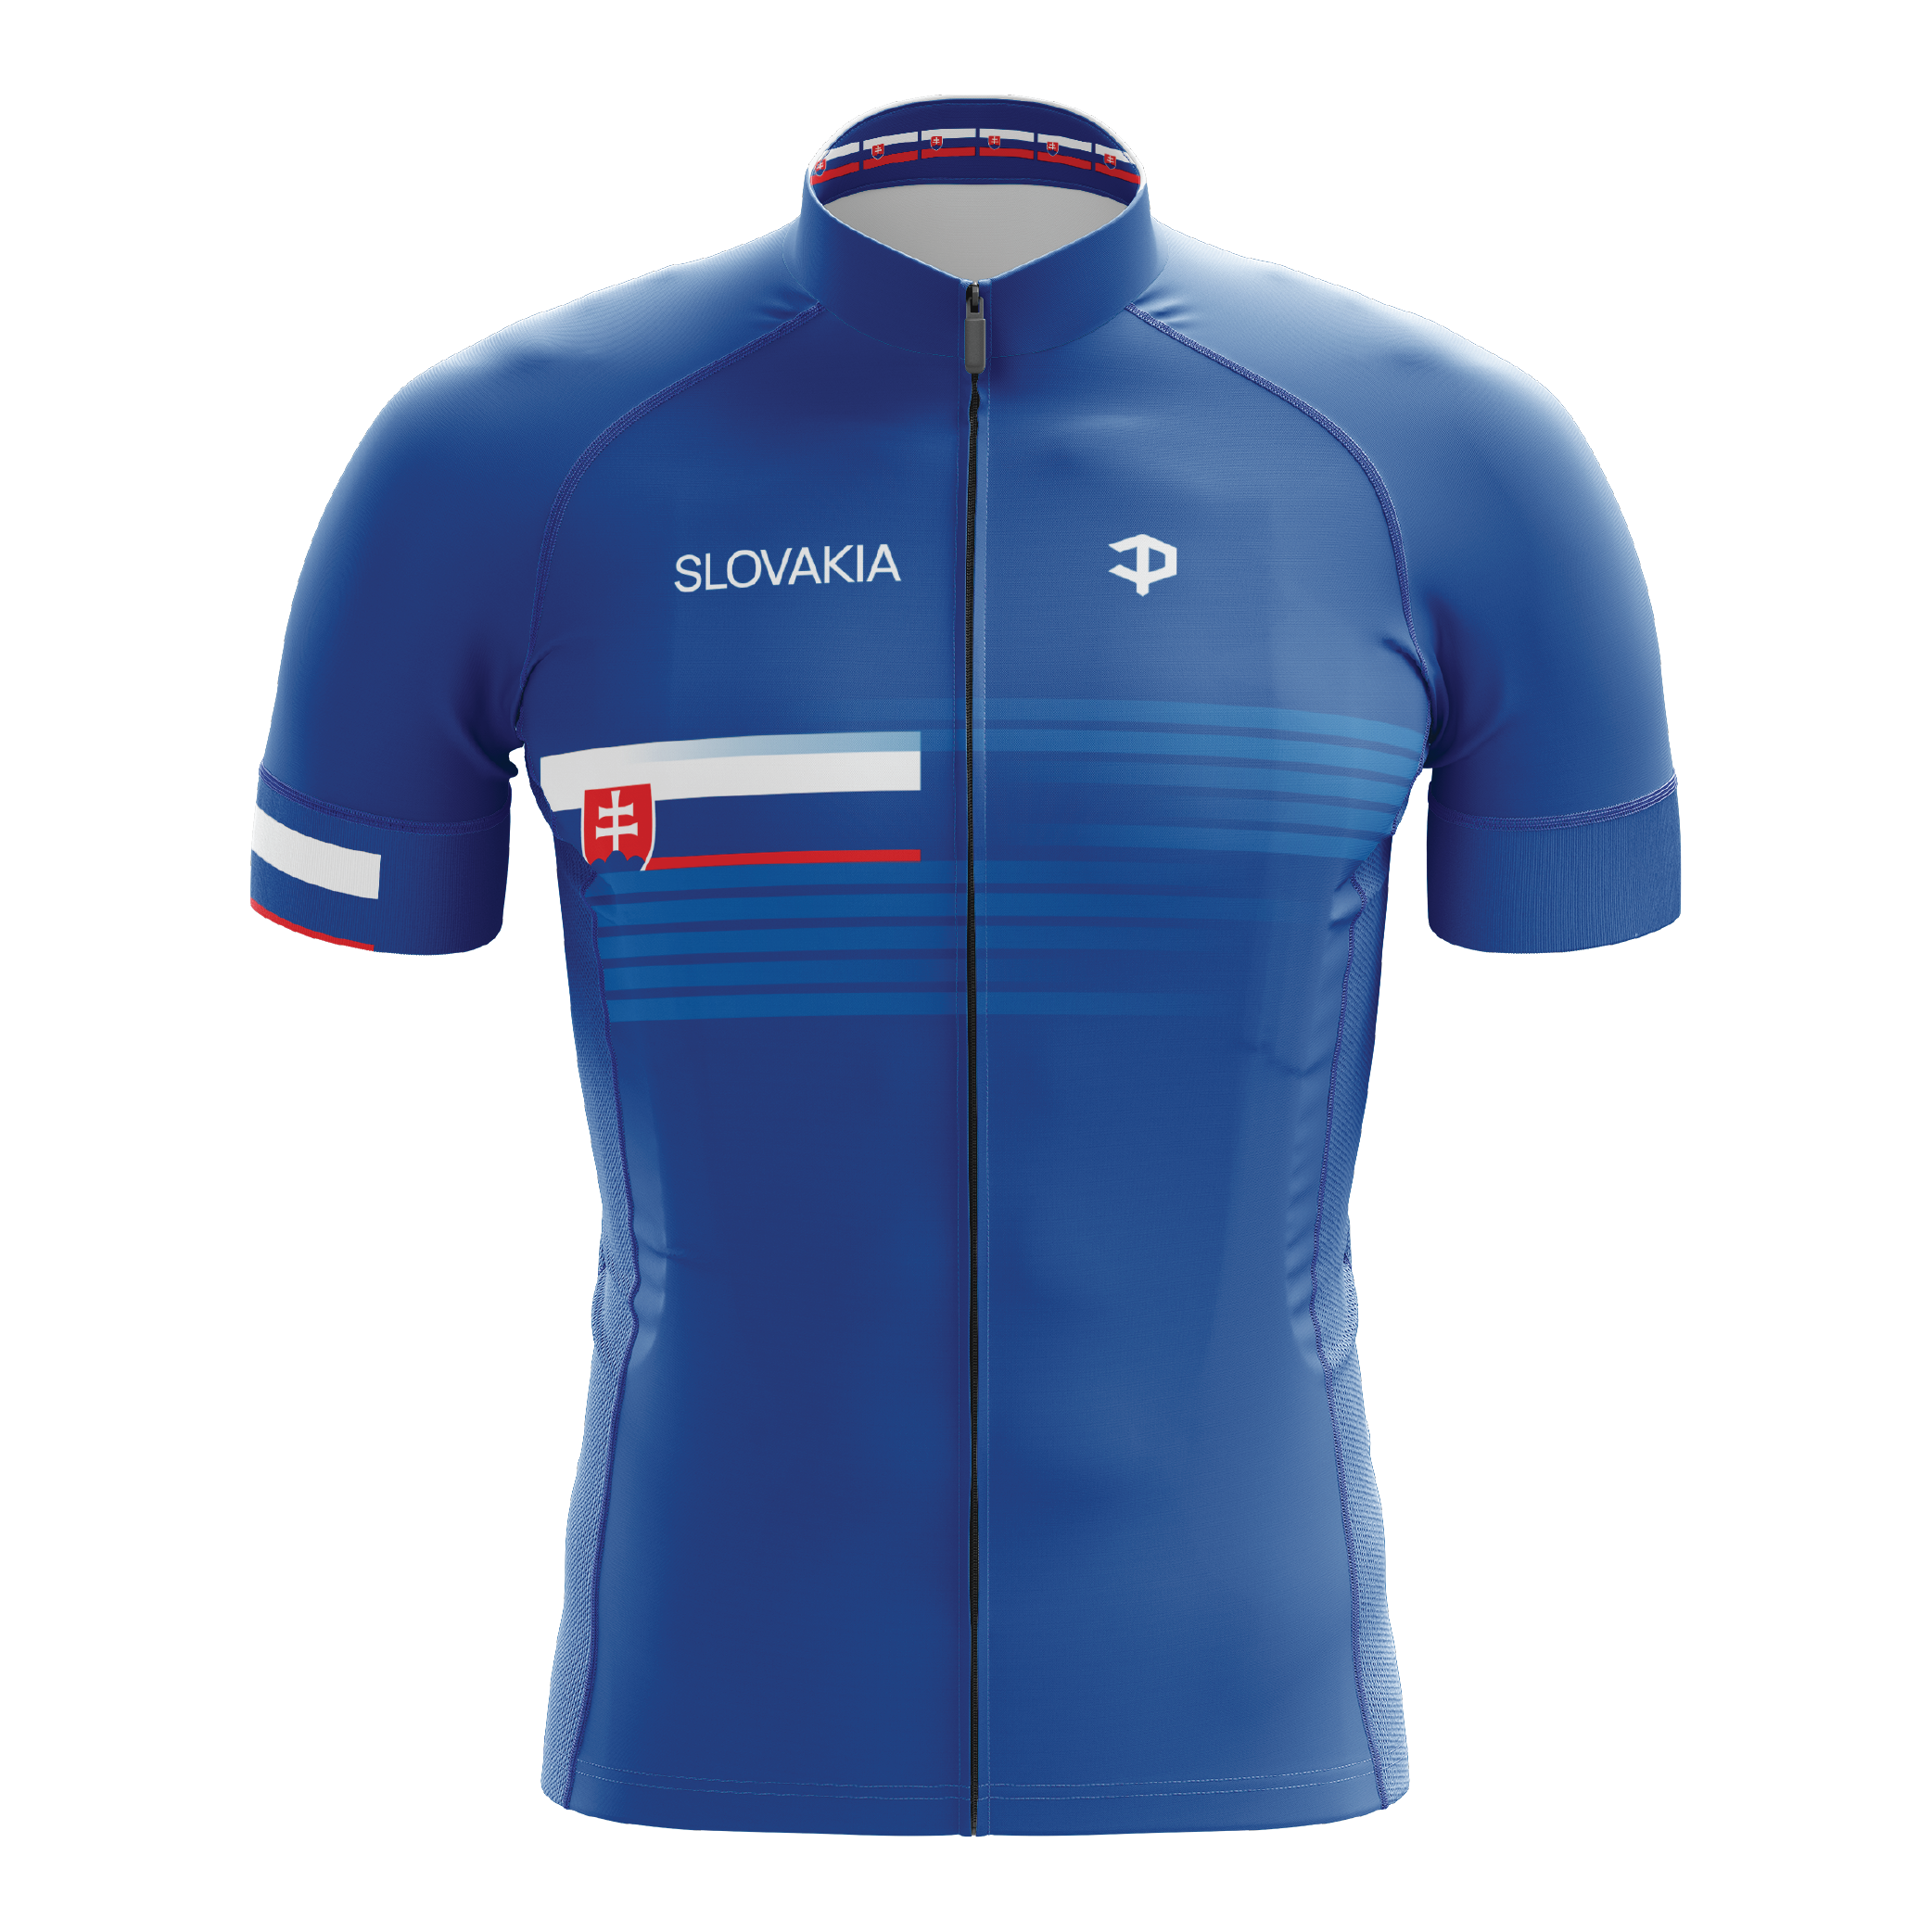 Slovakia Short Sleeve Cycling Jersey